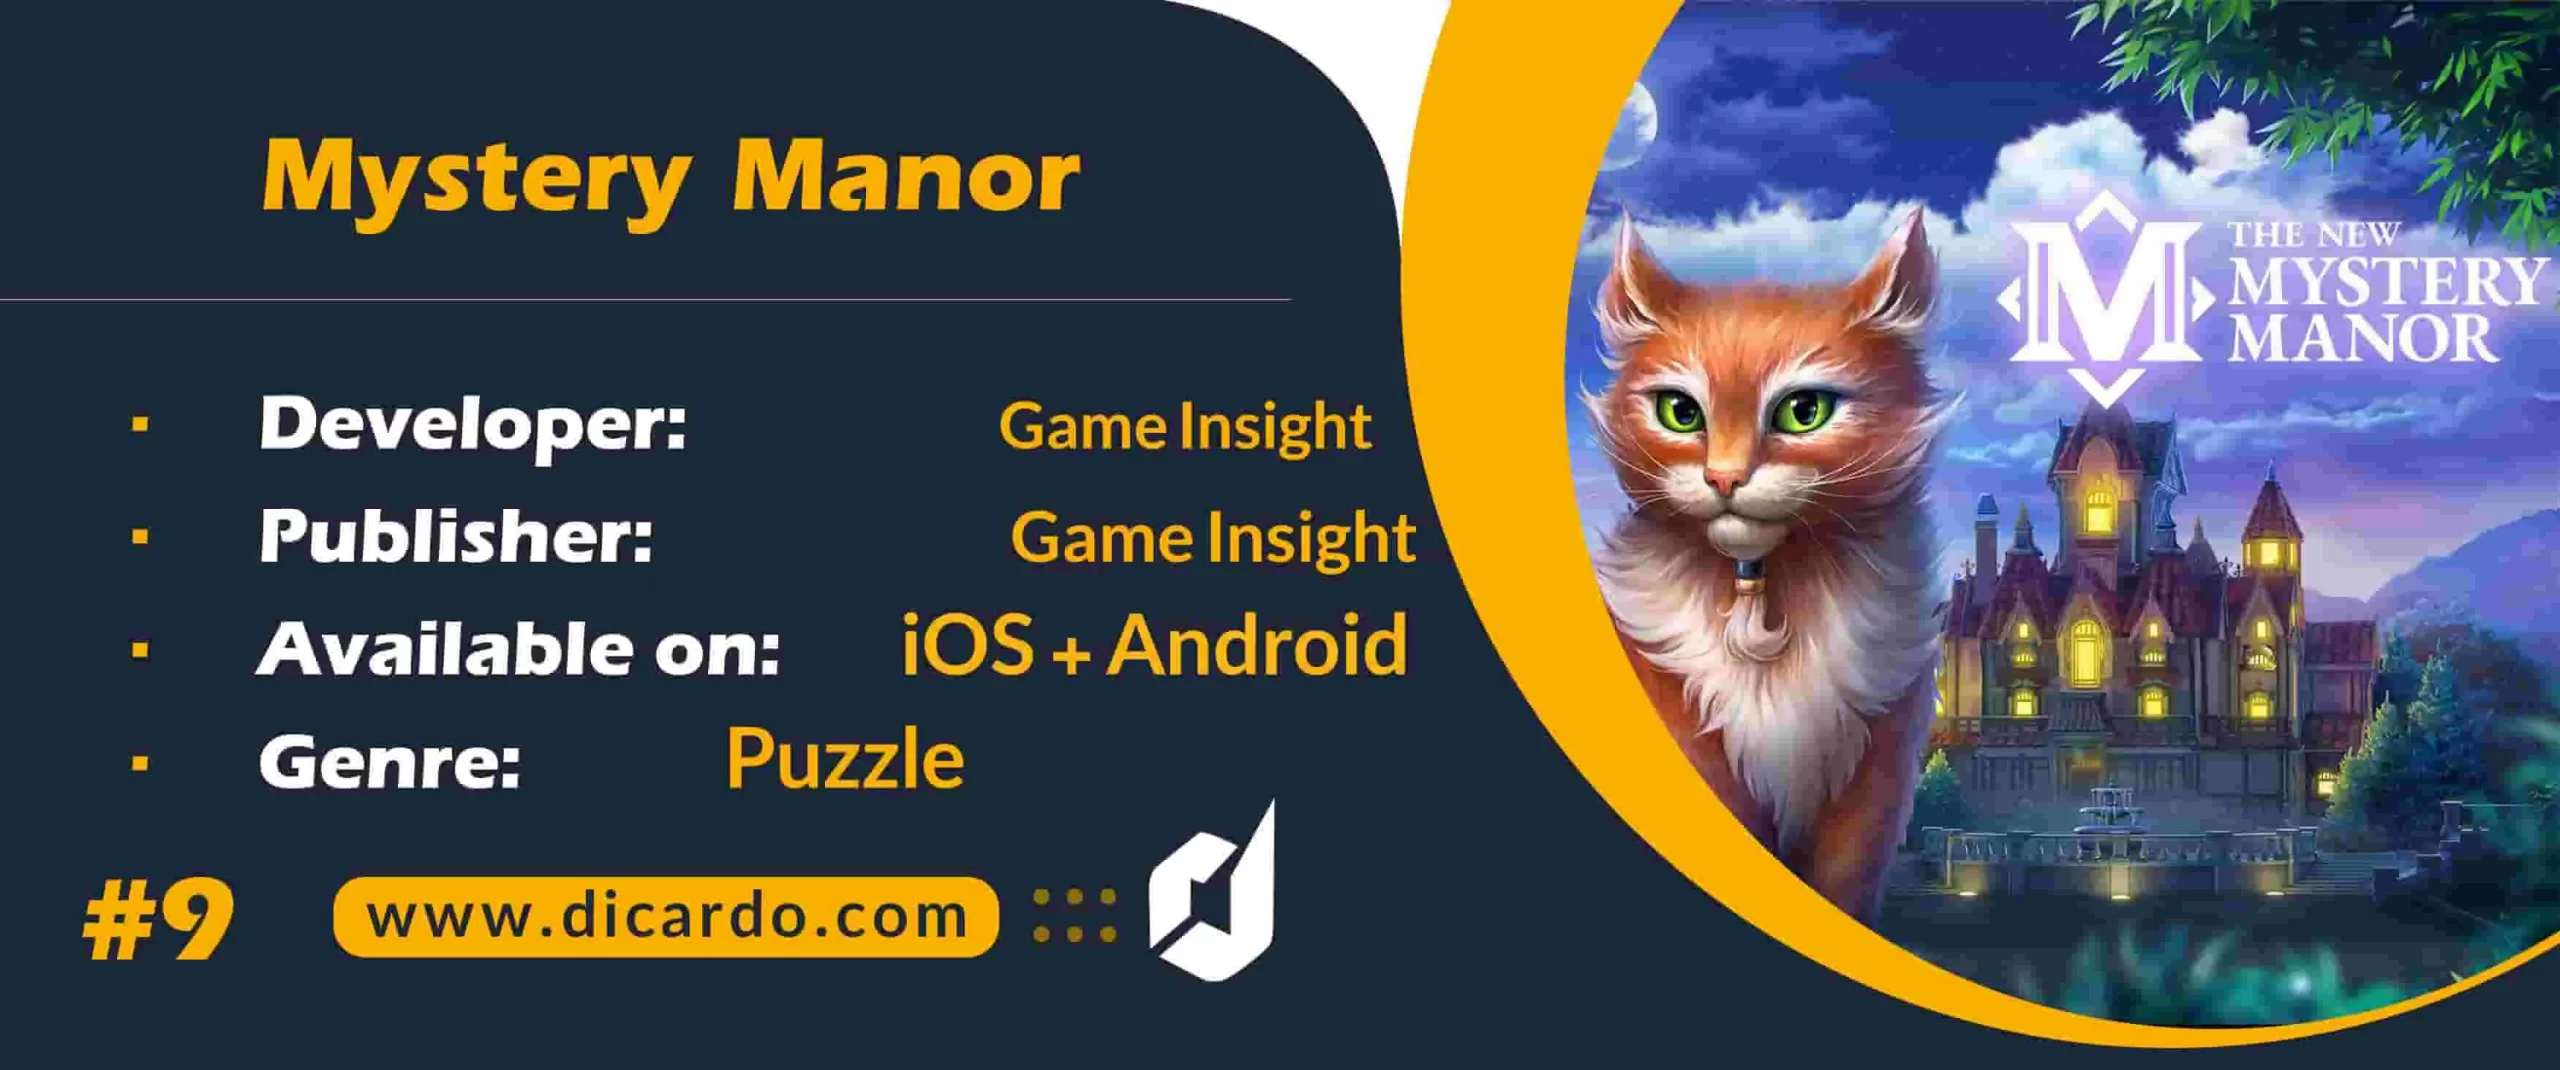 #9 میستری مانور Mystery Manor از بهترین بازیهای پلیسی اشیاء مخفی